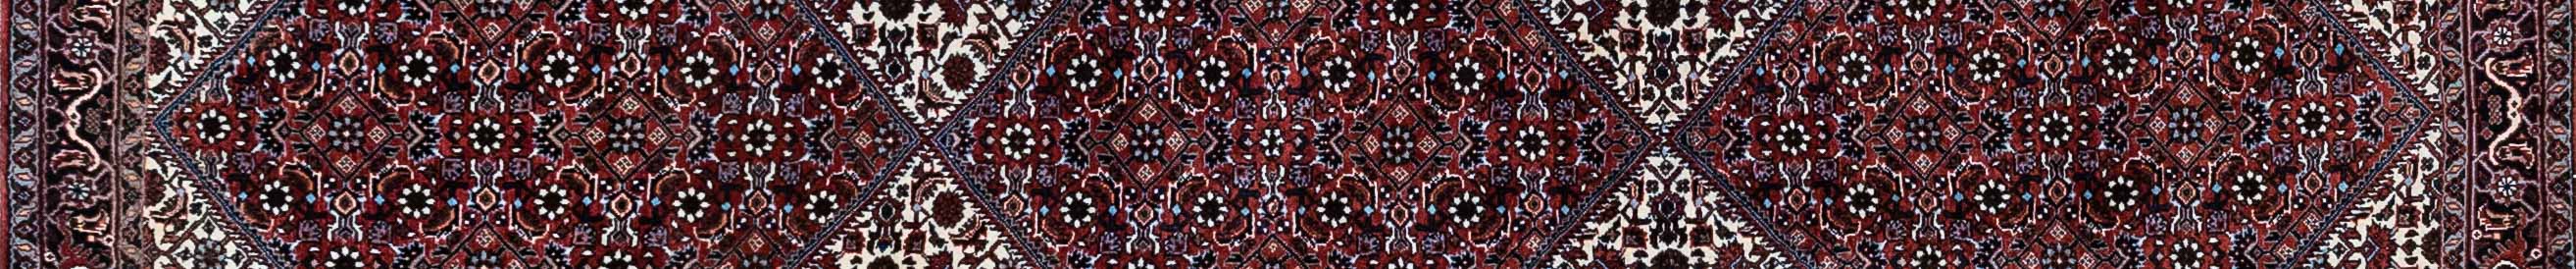 Bidjar Persian Carpet Rug N1Carpet Canada Montreal Tapis Persan 1550